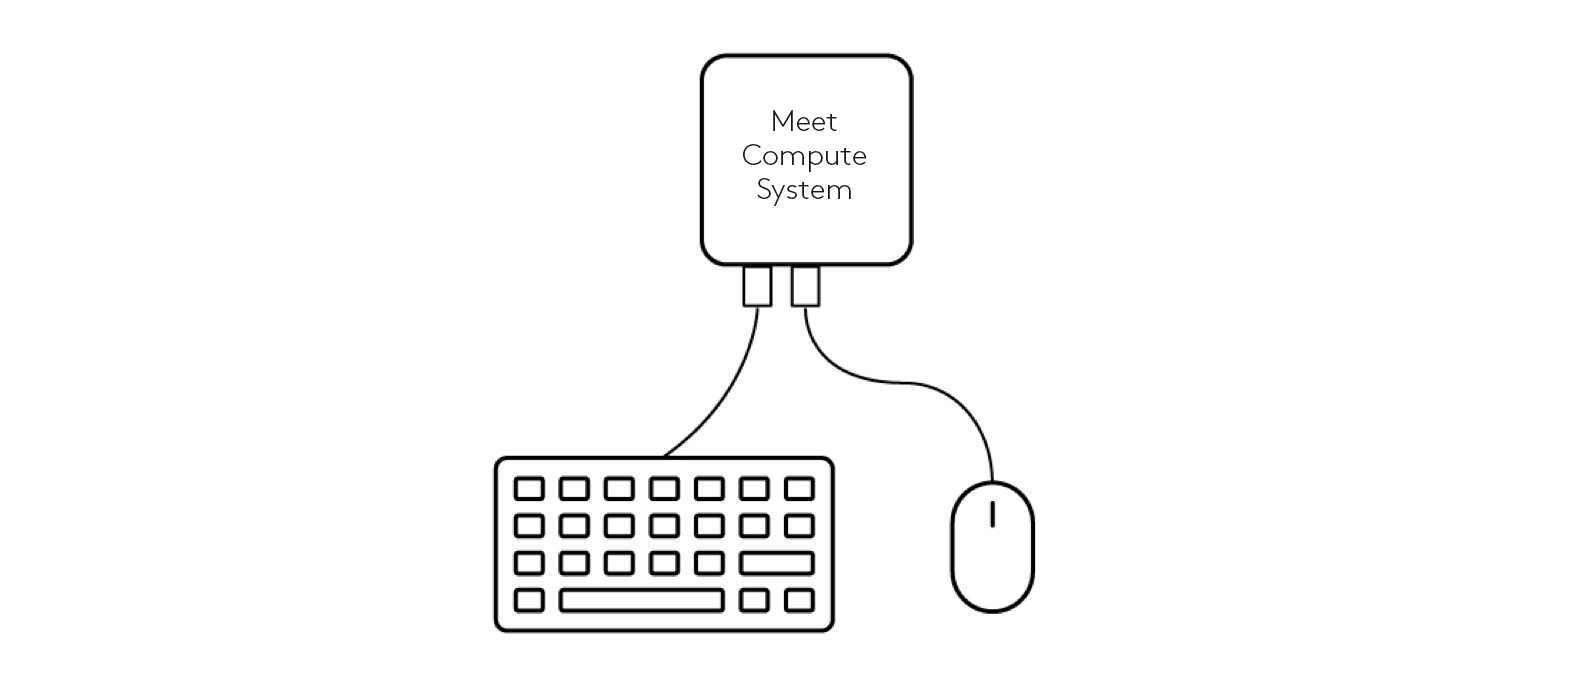 A billentyűzet és az egér Meet számítástechnikai rendszerhez való csatlakoztatásának rajza